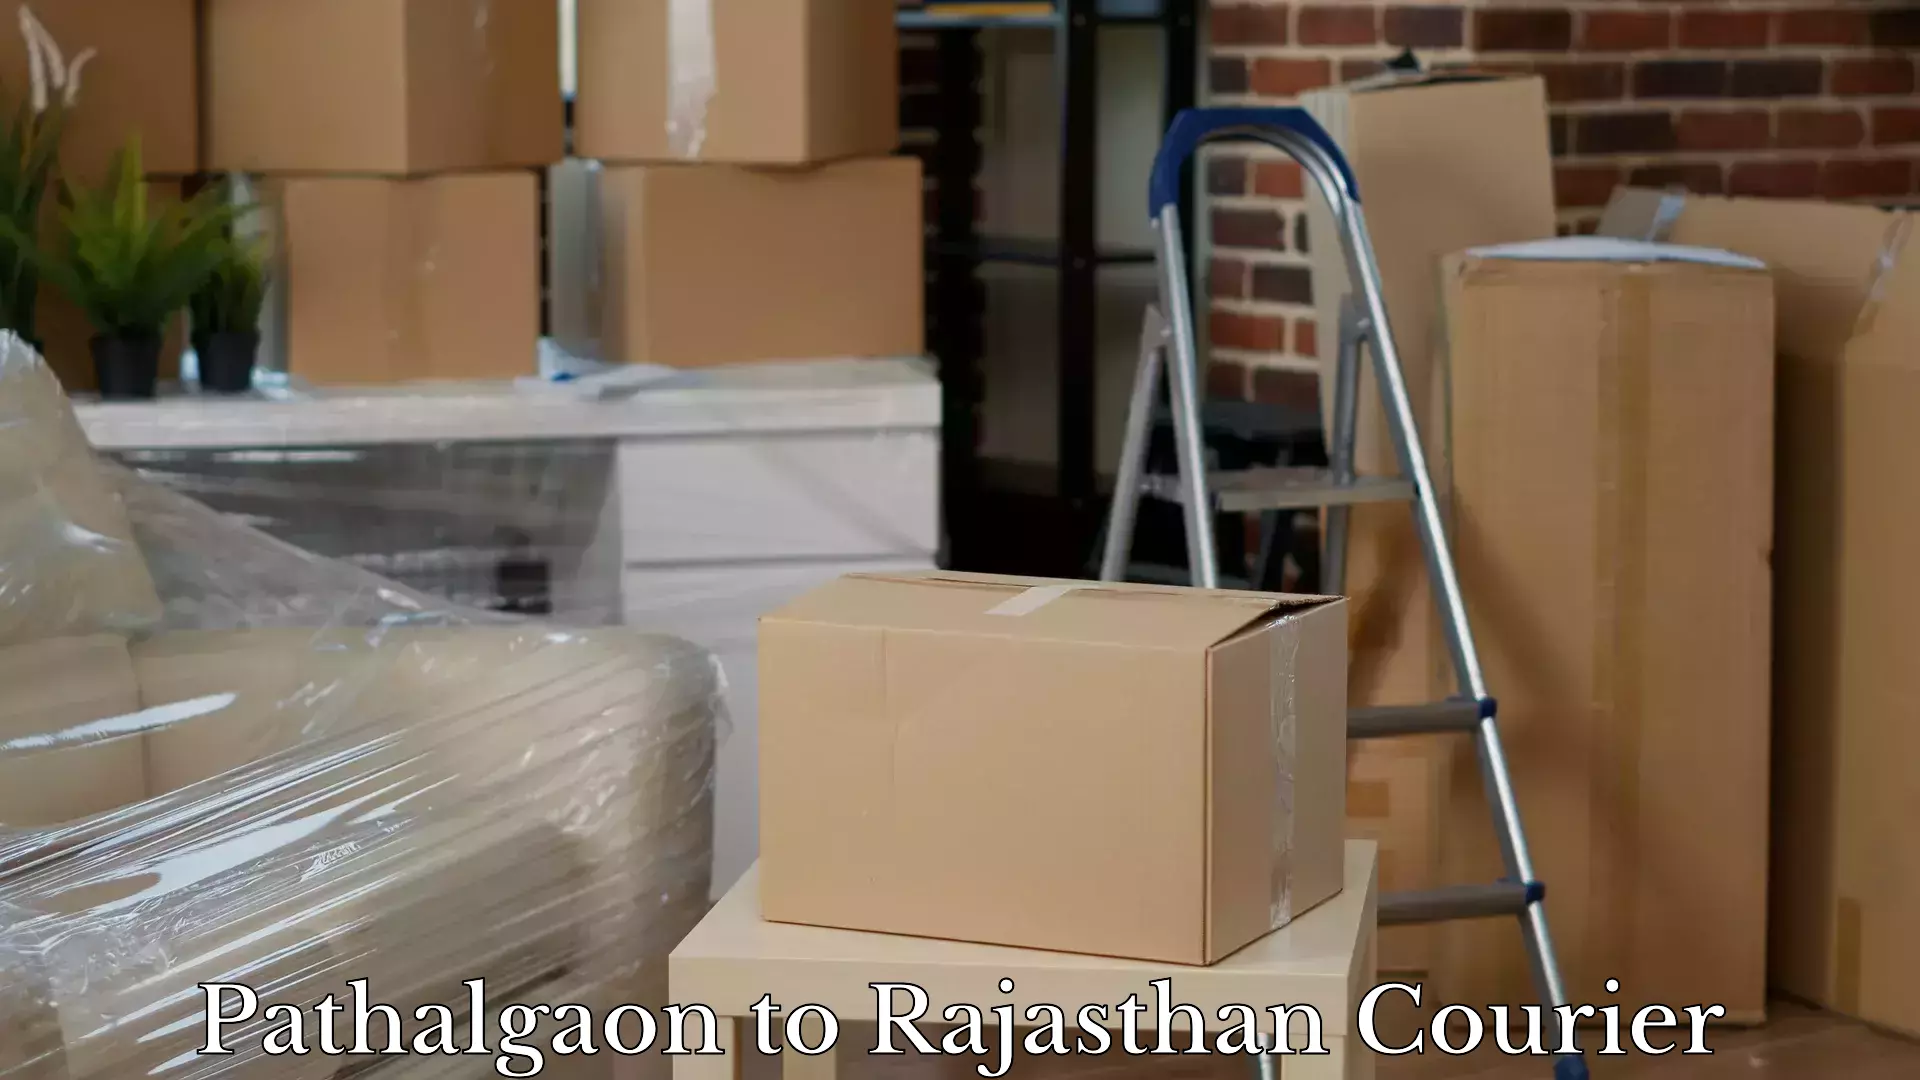 Baggage transport technology Pathalgaon to Rajasthan